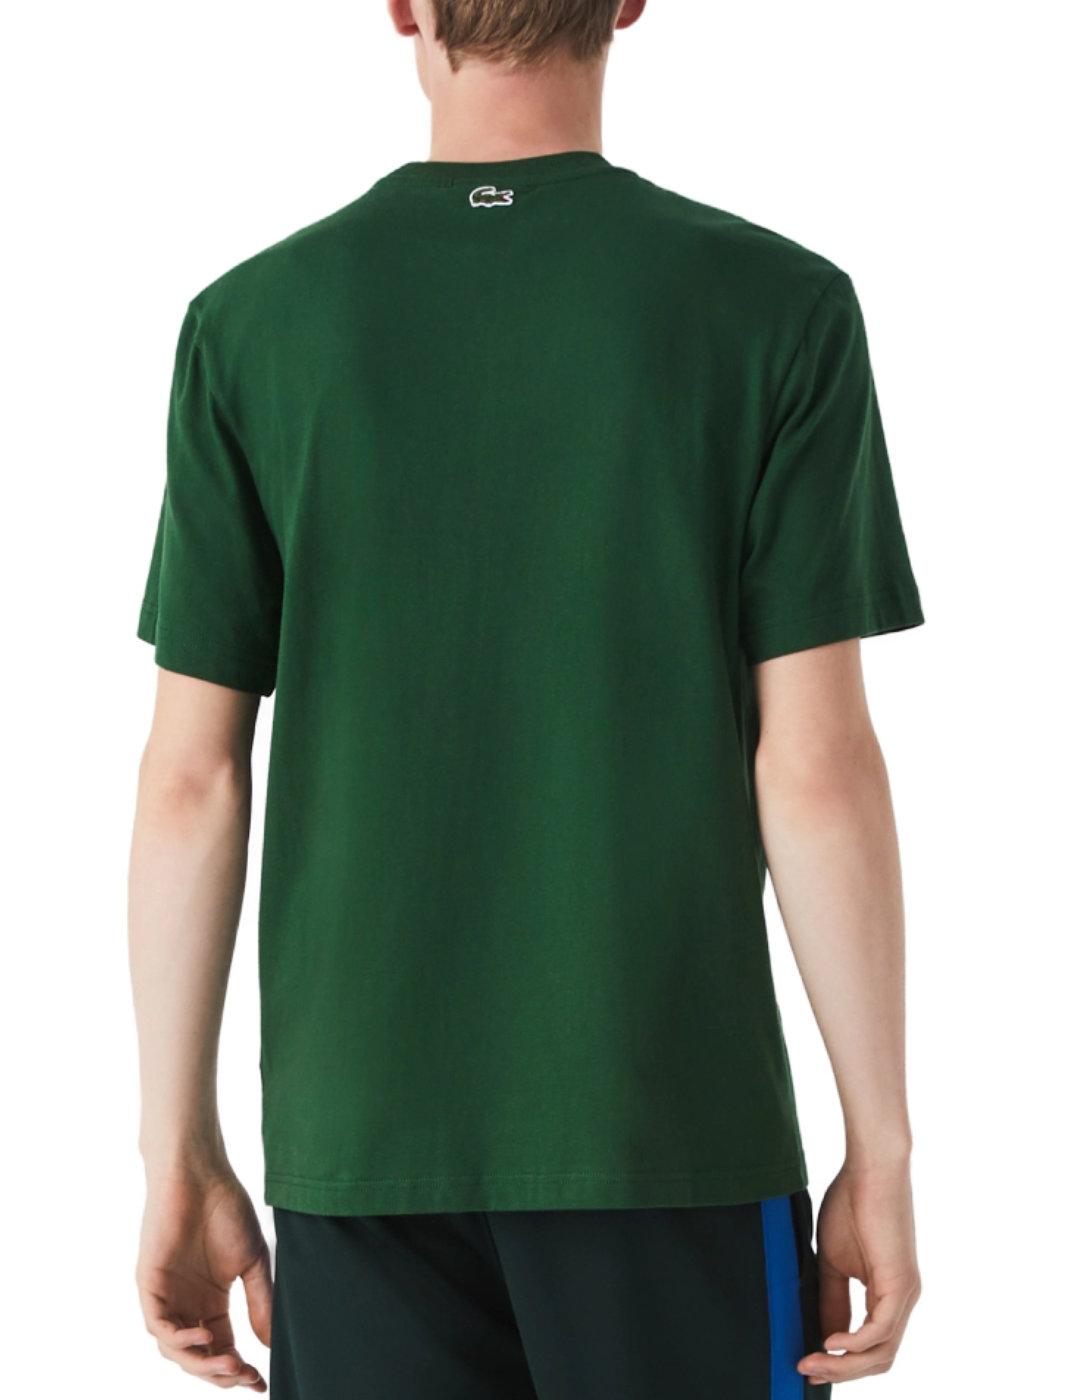 Camiseta Lacoste verde logo blanco de hombre-b